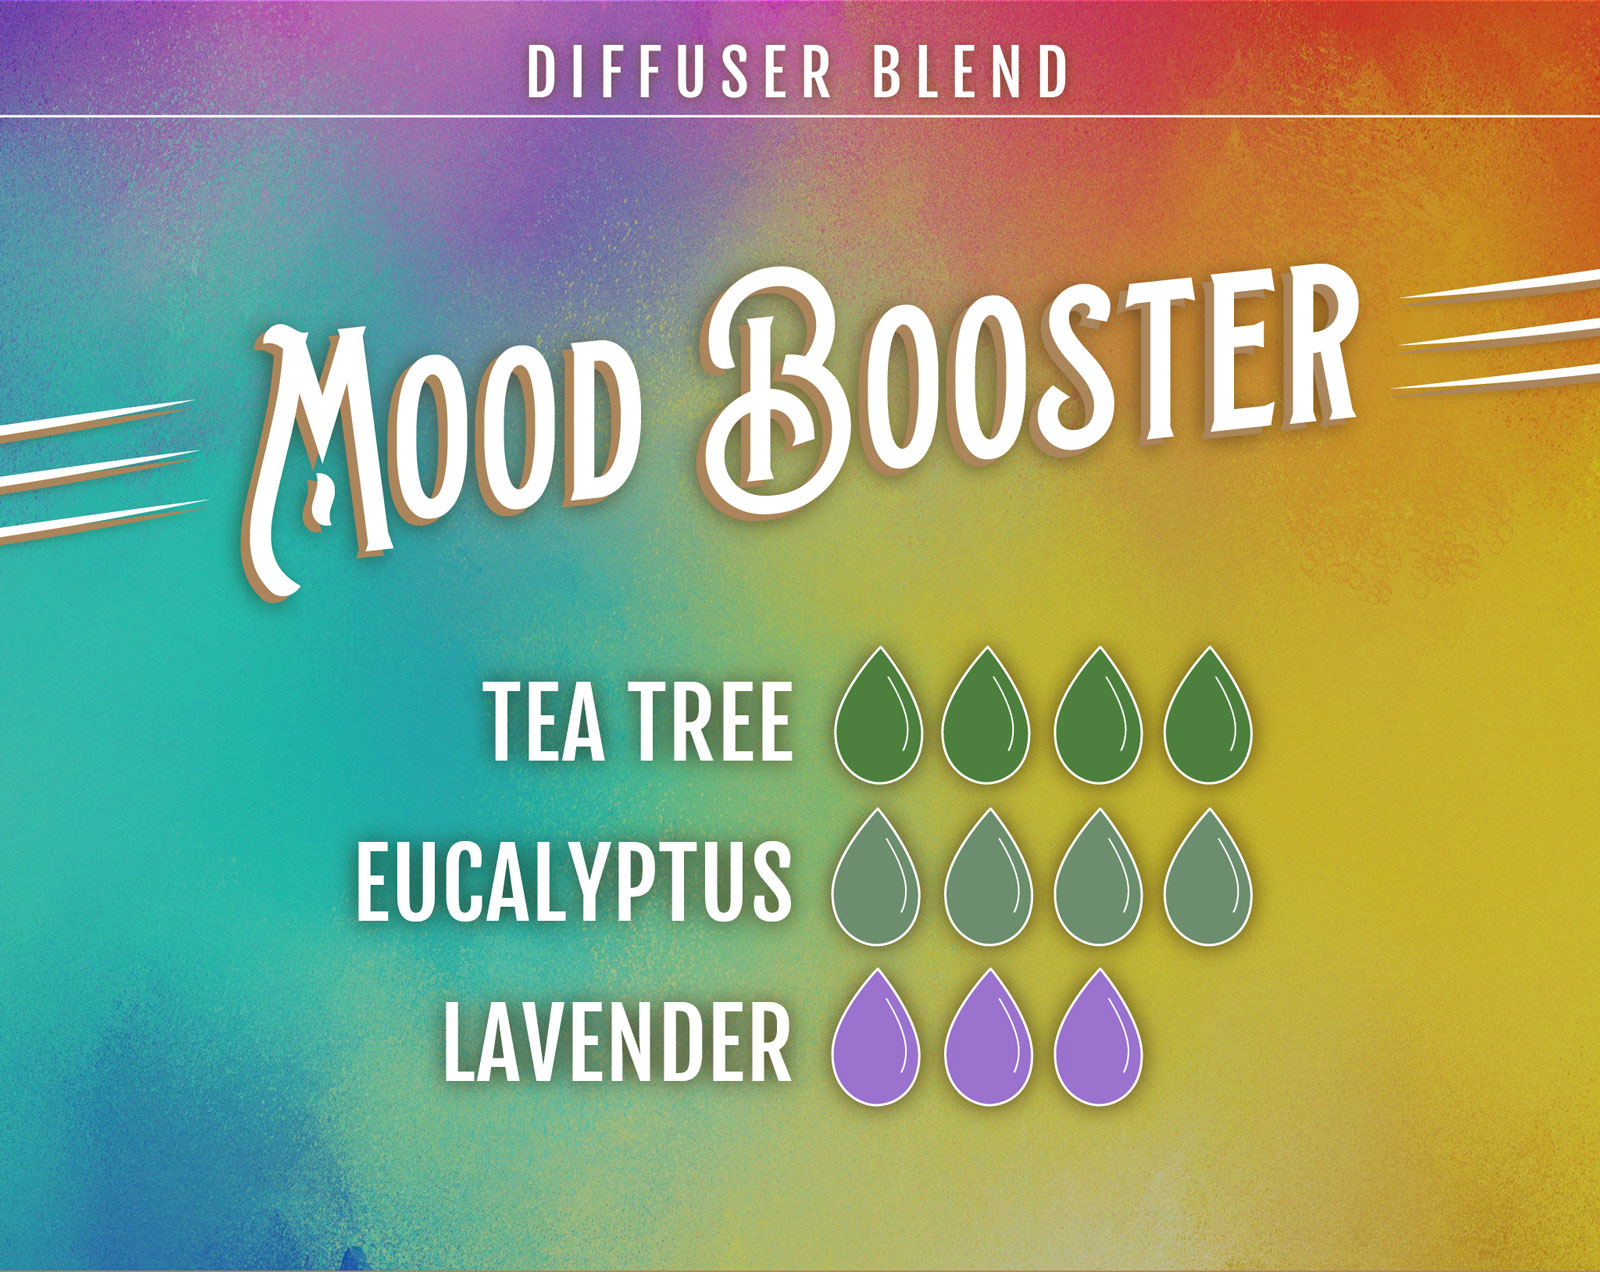 Tea Tree Essential Oil Diffuser Blend V Mood Booster - 4 drops Tea Tree 4 drops Eucalyptus 3 drops Lavender